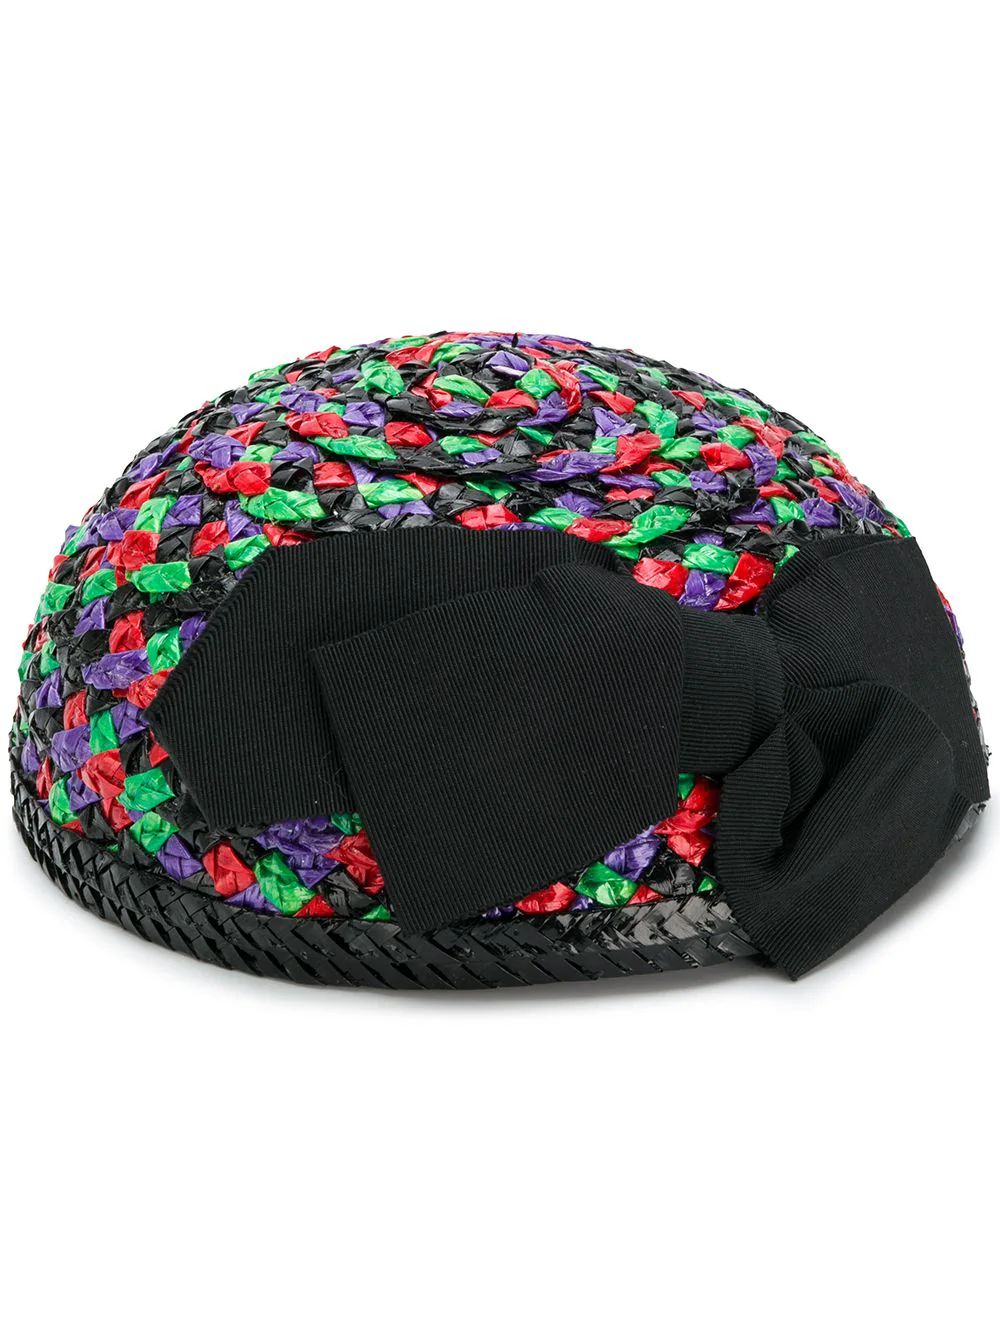 Yves Saint Laurent Vintage woven hat - Multicolour | FarFetch Global